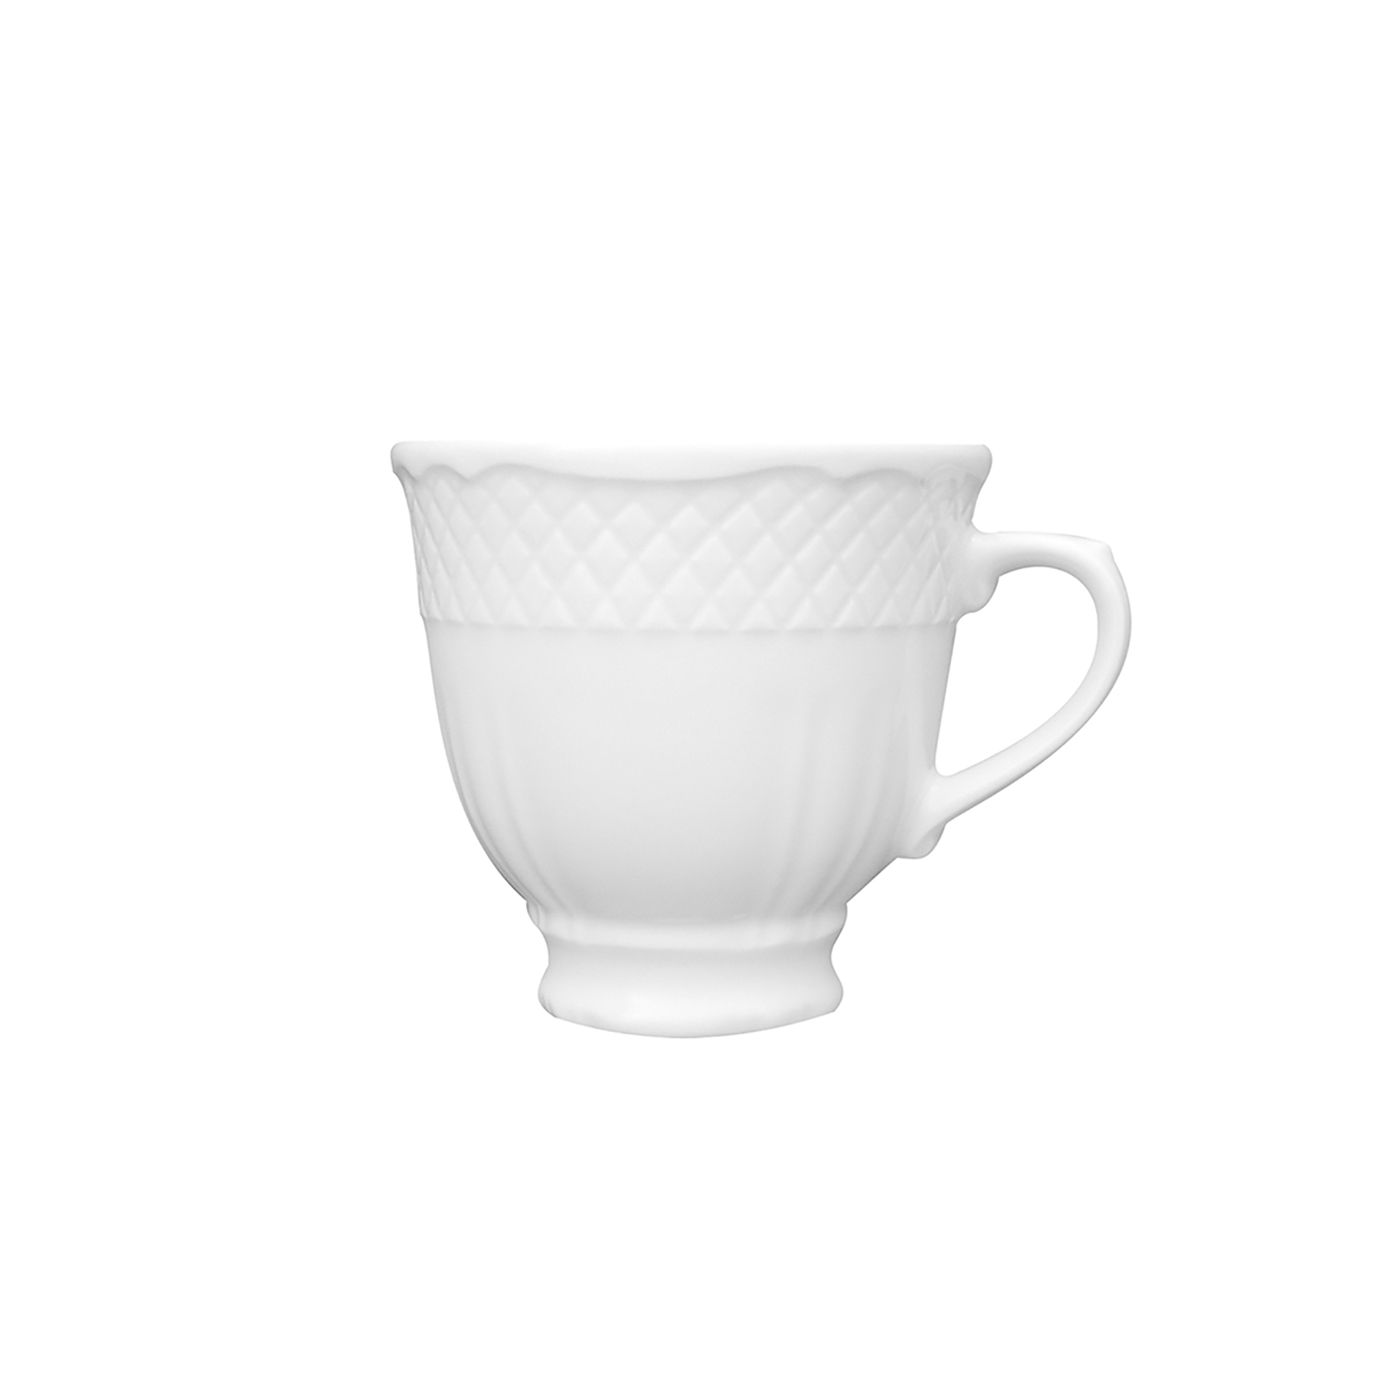 Kaffee-Obertasse - Inhalt 0,22 ltr -, Form LA REINE - uni weiß - nicht stapelbar, ohne Untertasse